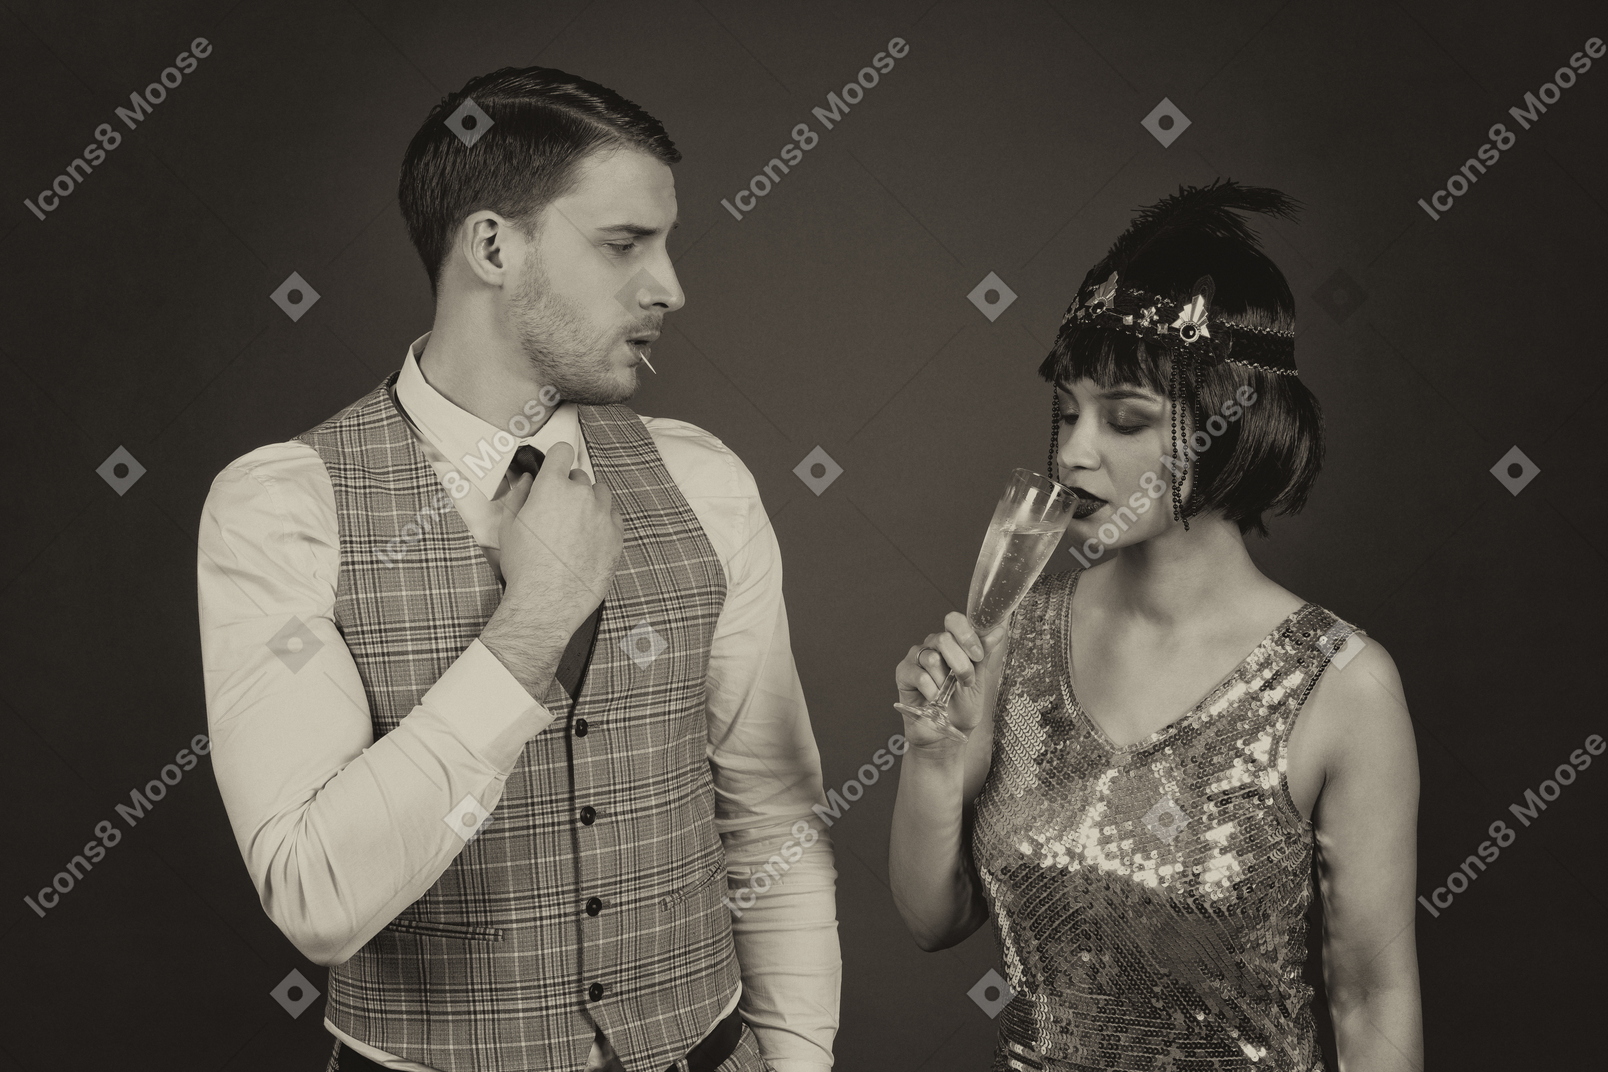 Mann, der eine krawatte anpasst, während er seine freundin mit einem glas champagner ansieht